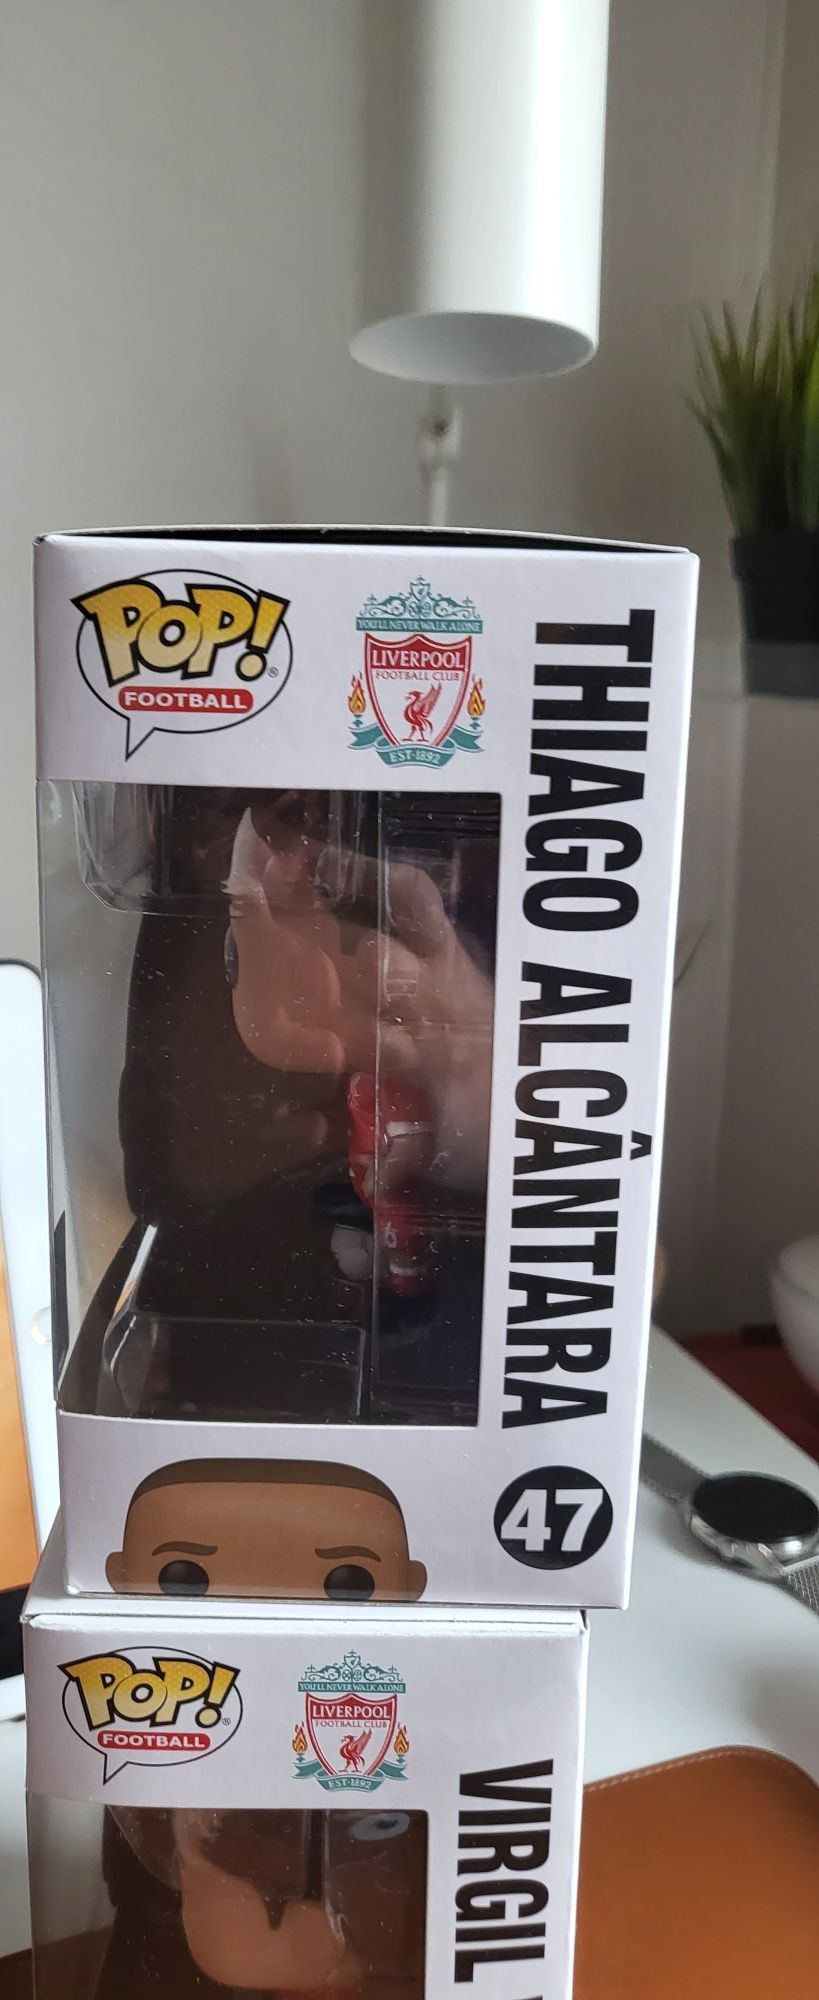 Thiago Alcantara.Liverpool FC.Funko Pop